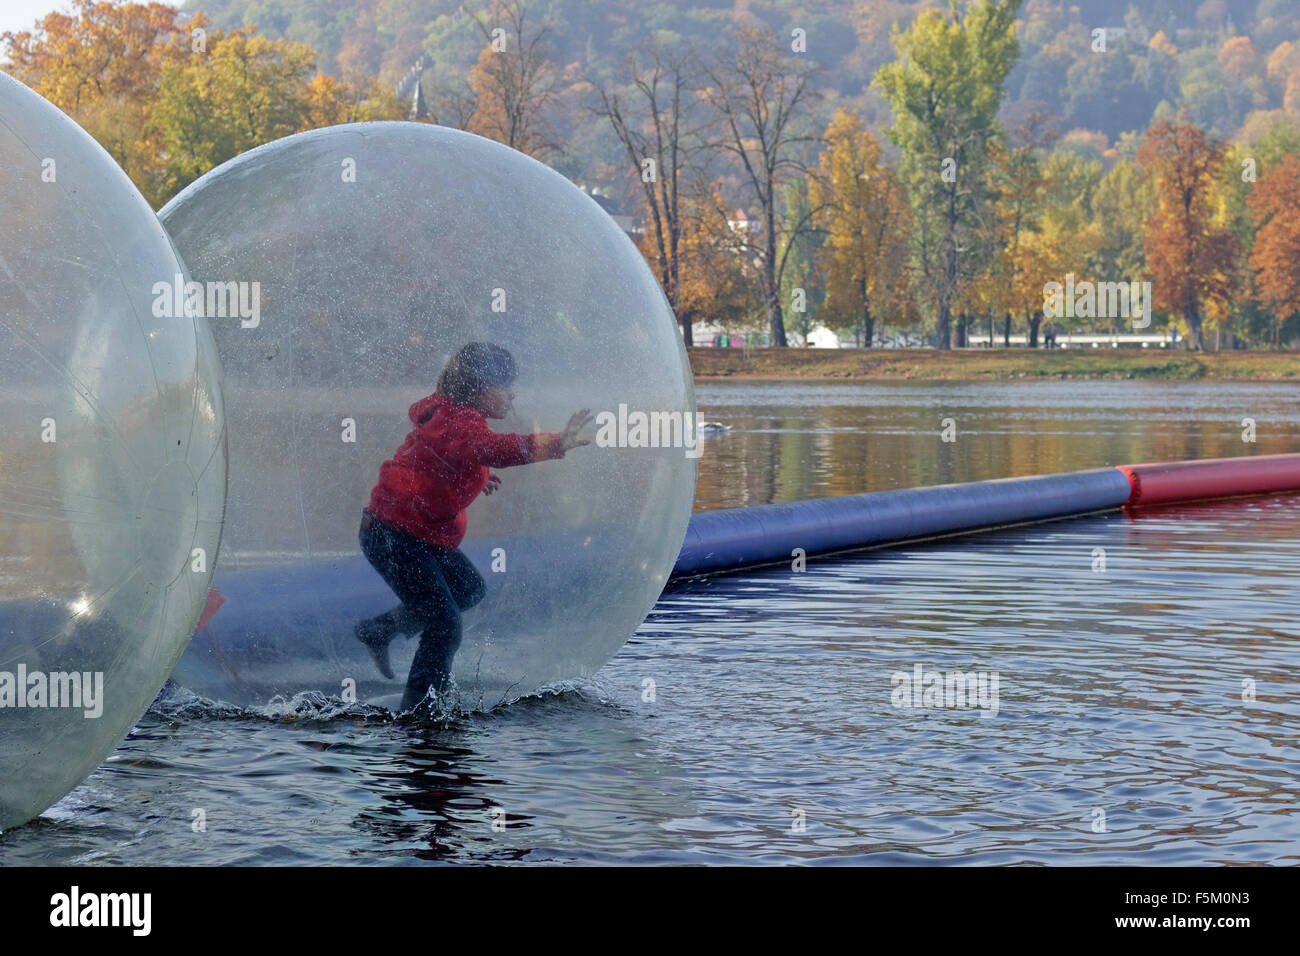 boy in water ball, River Vltava, Prague, Czech Republic Stock Photo